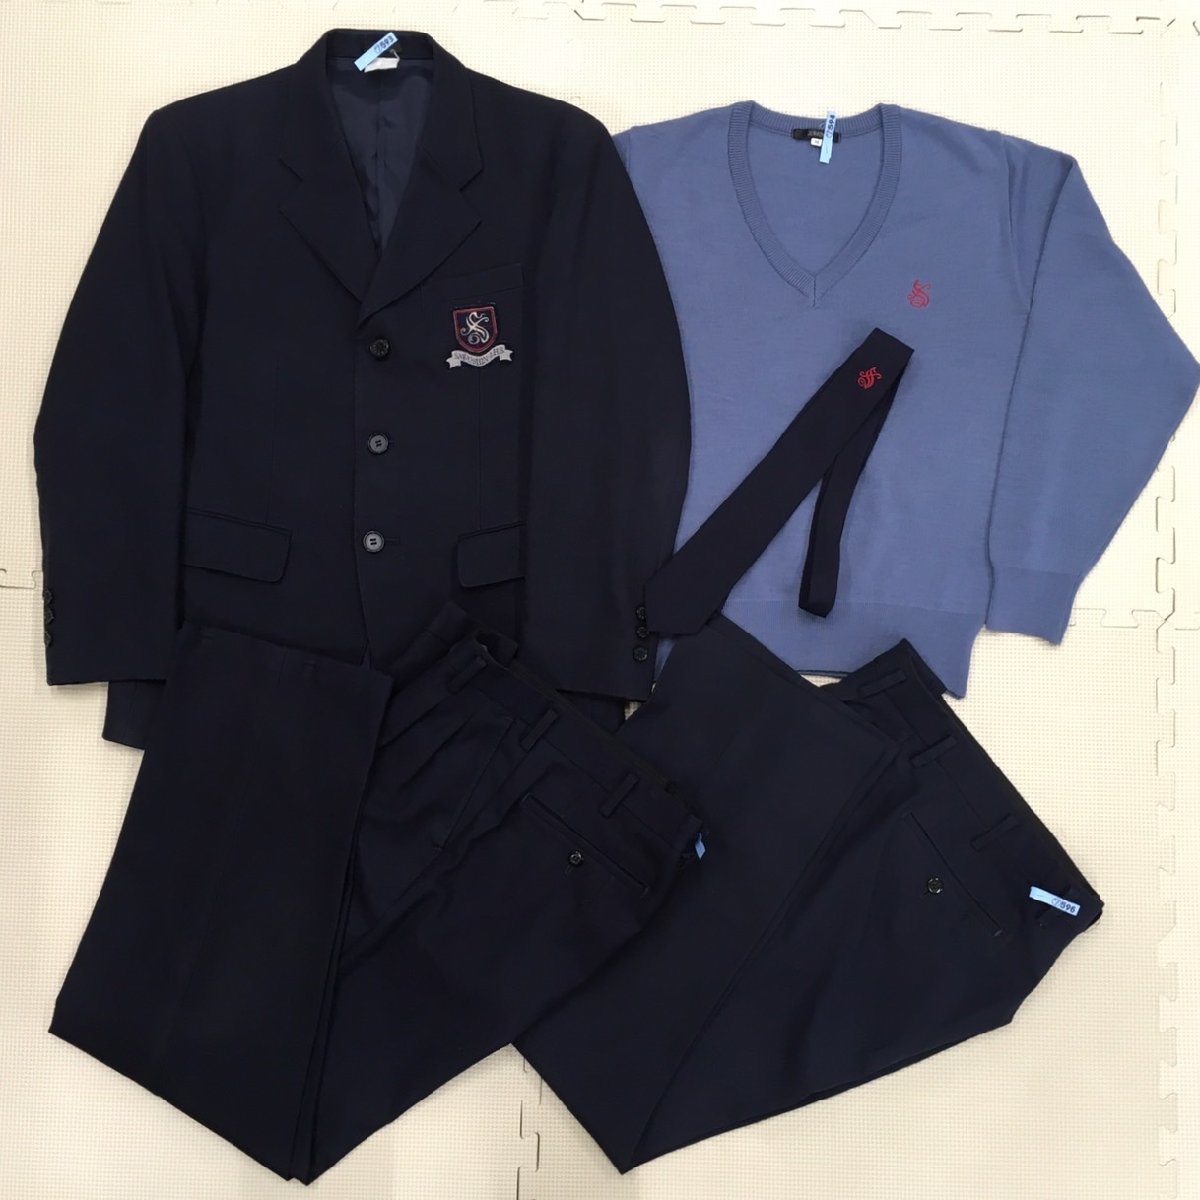 AT563-1( б/у ) Tochigi префектура произведение новый .. средний и т.п. часть мужчина . школьная форма 5 позиций комплект /S/M/W76/ блейзер / свитер / брюки / галстук /ZIPPY/ форма / зима одежда / летняя одежда /. индустрия сырой товар 